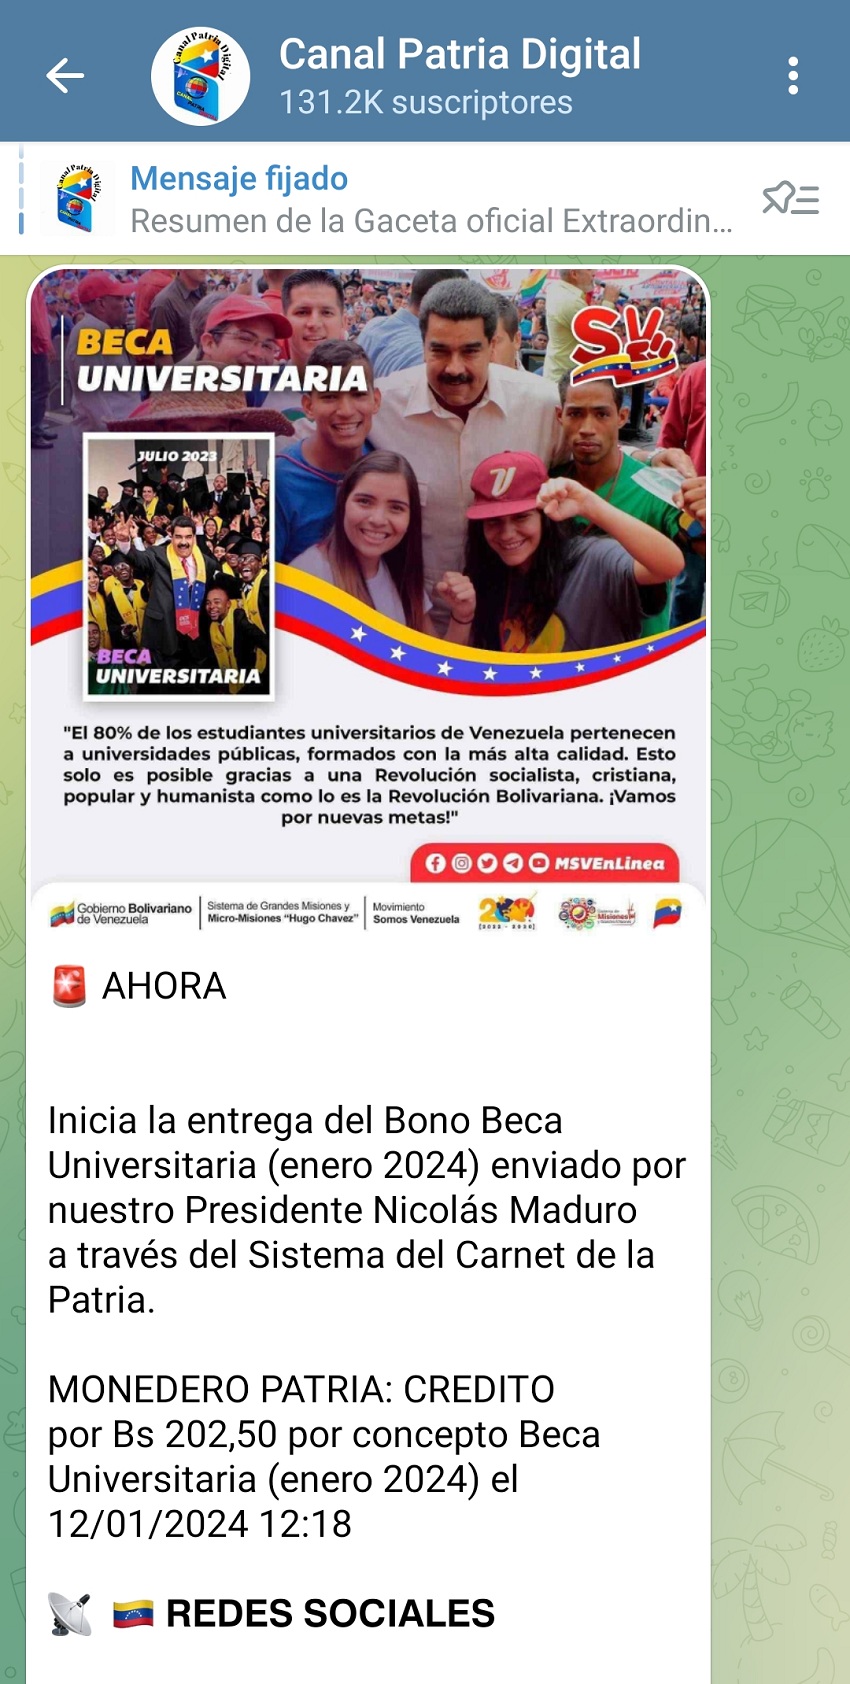 Pagan los bonos "Beca Universitaria" y "Beca Enseñanza Media" por el Carnet de la Patria